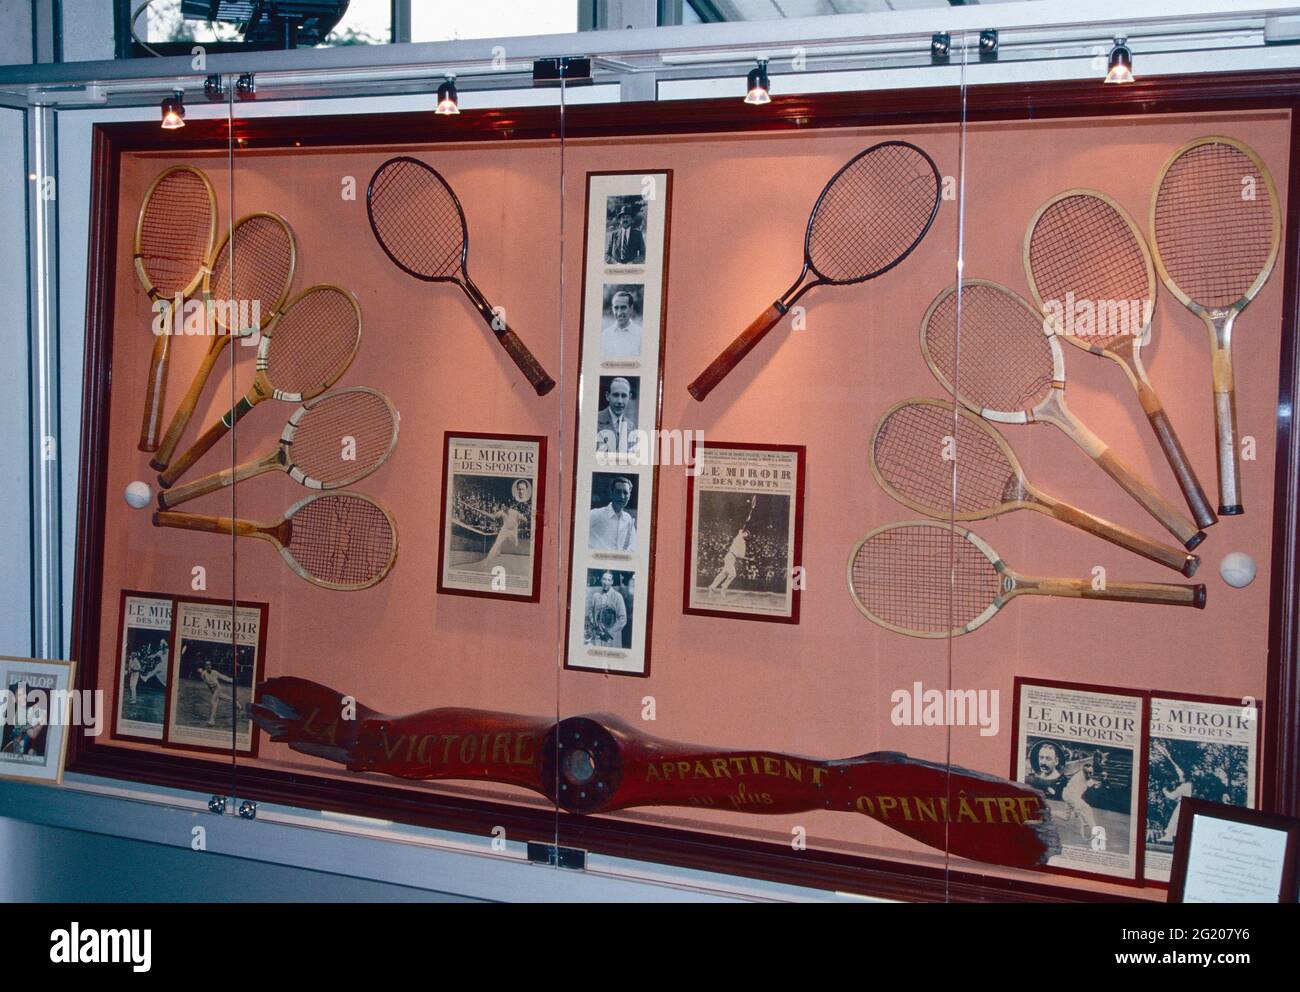 Collection de raquettes de tennis en bois des anciens champions, Roland Garros, France 1991 Banque D'Images